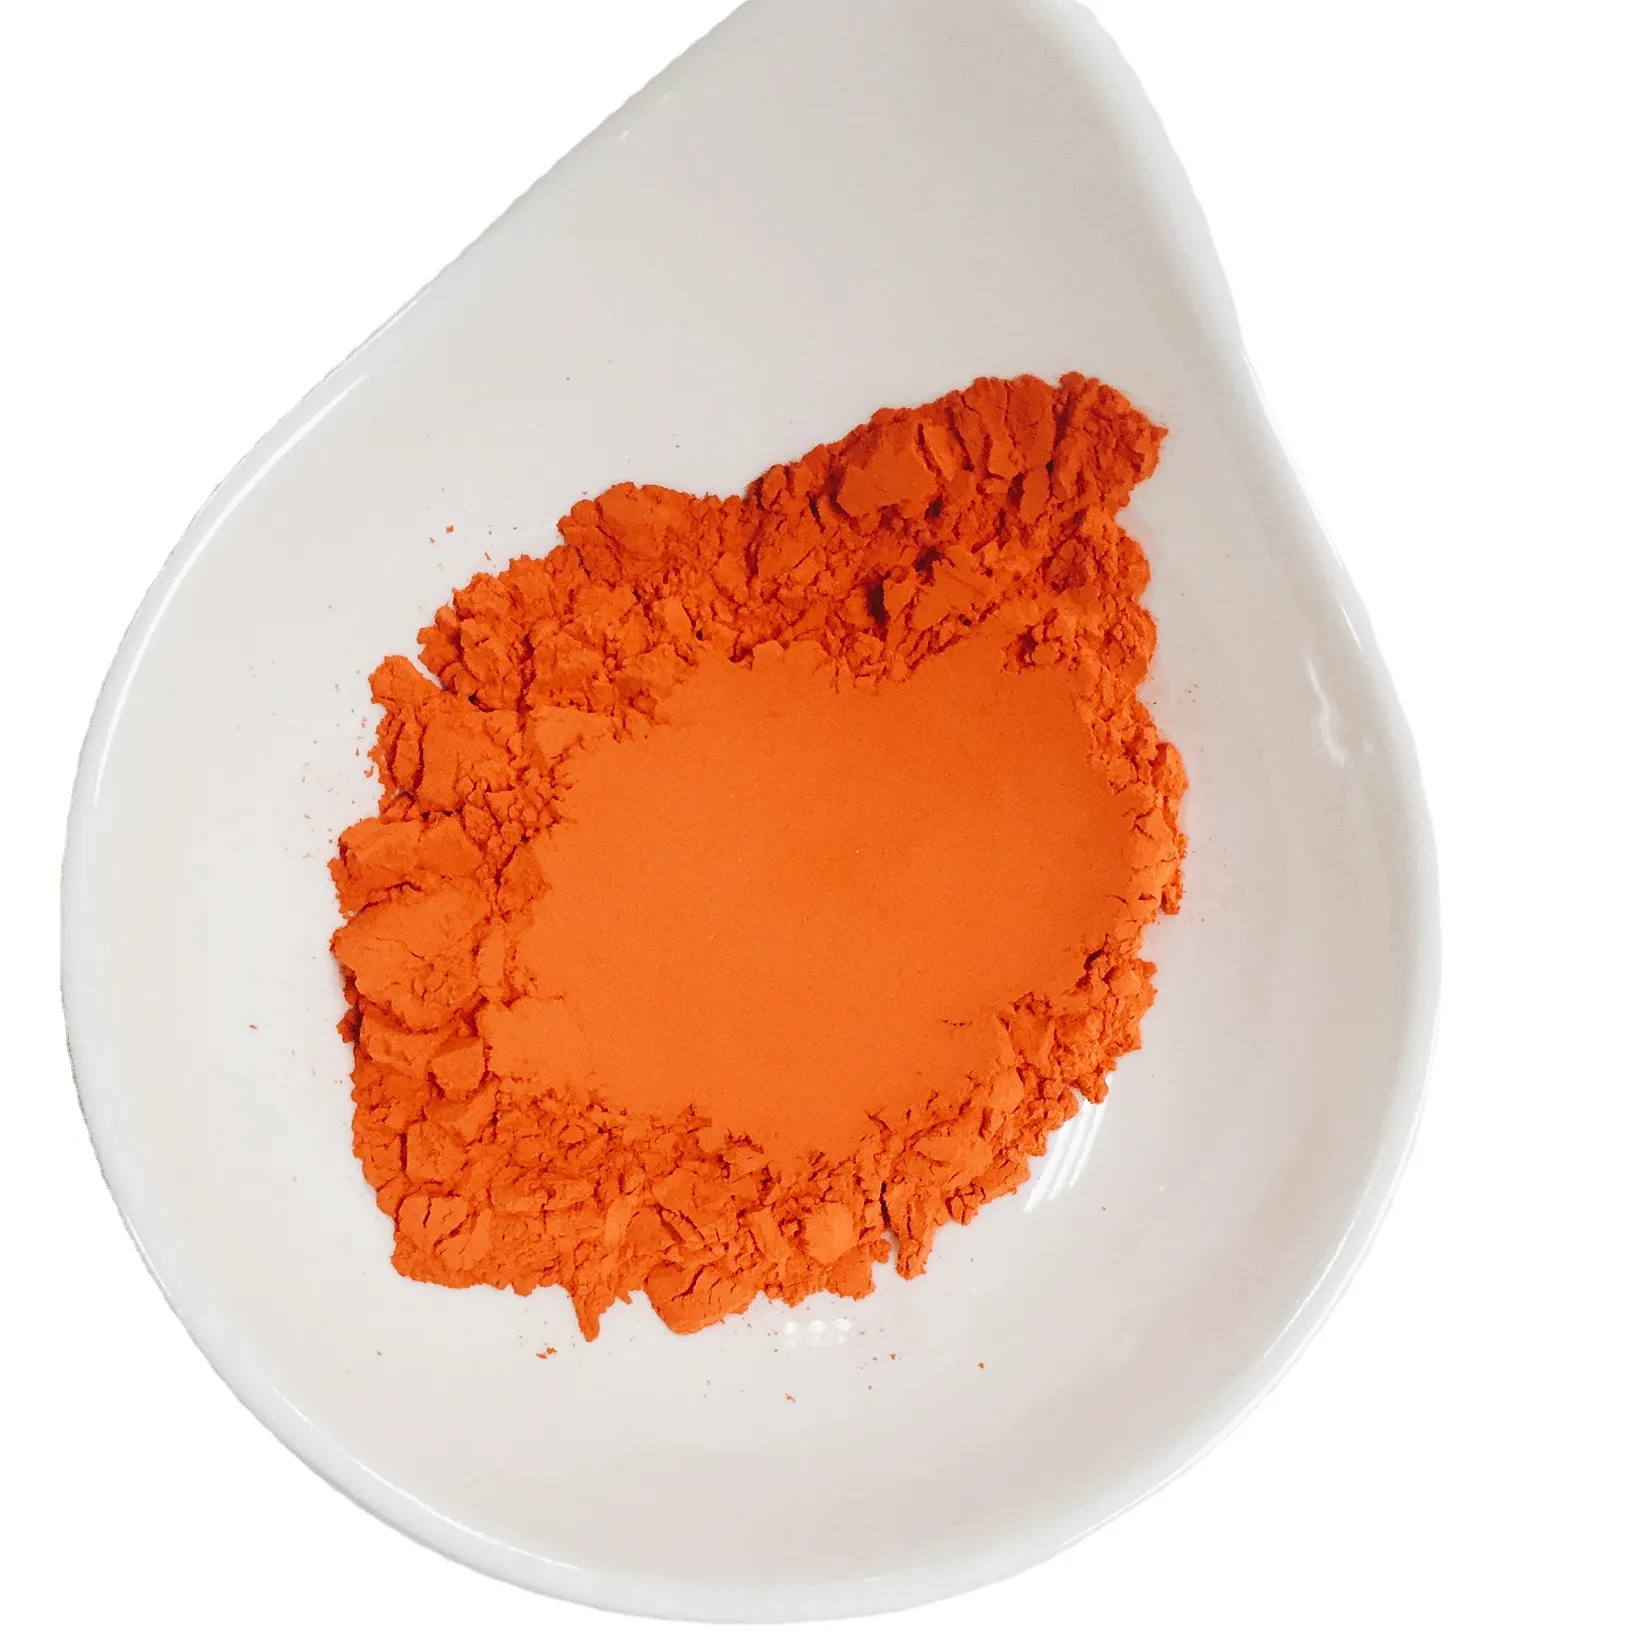 セラミックタイル原料用オレンジ色釉薬ステインマイカ顔料